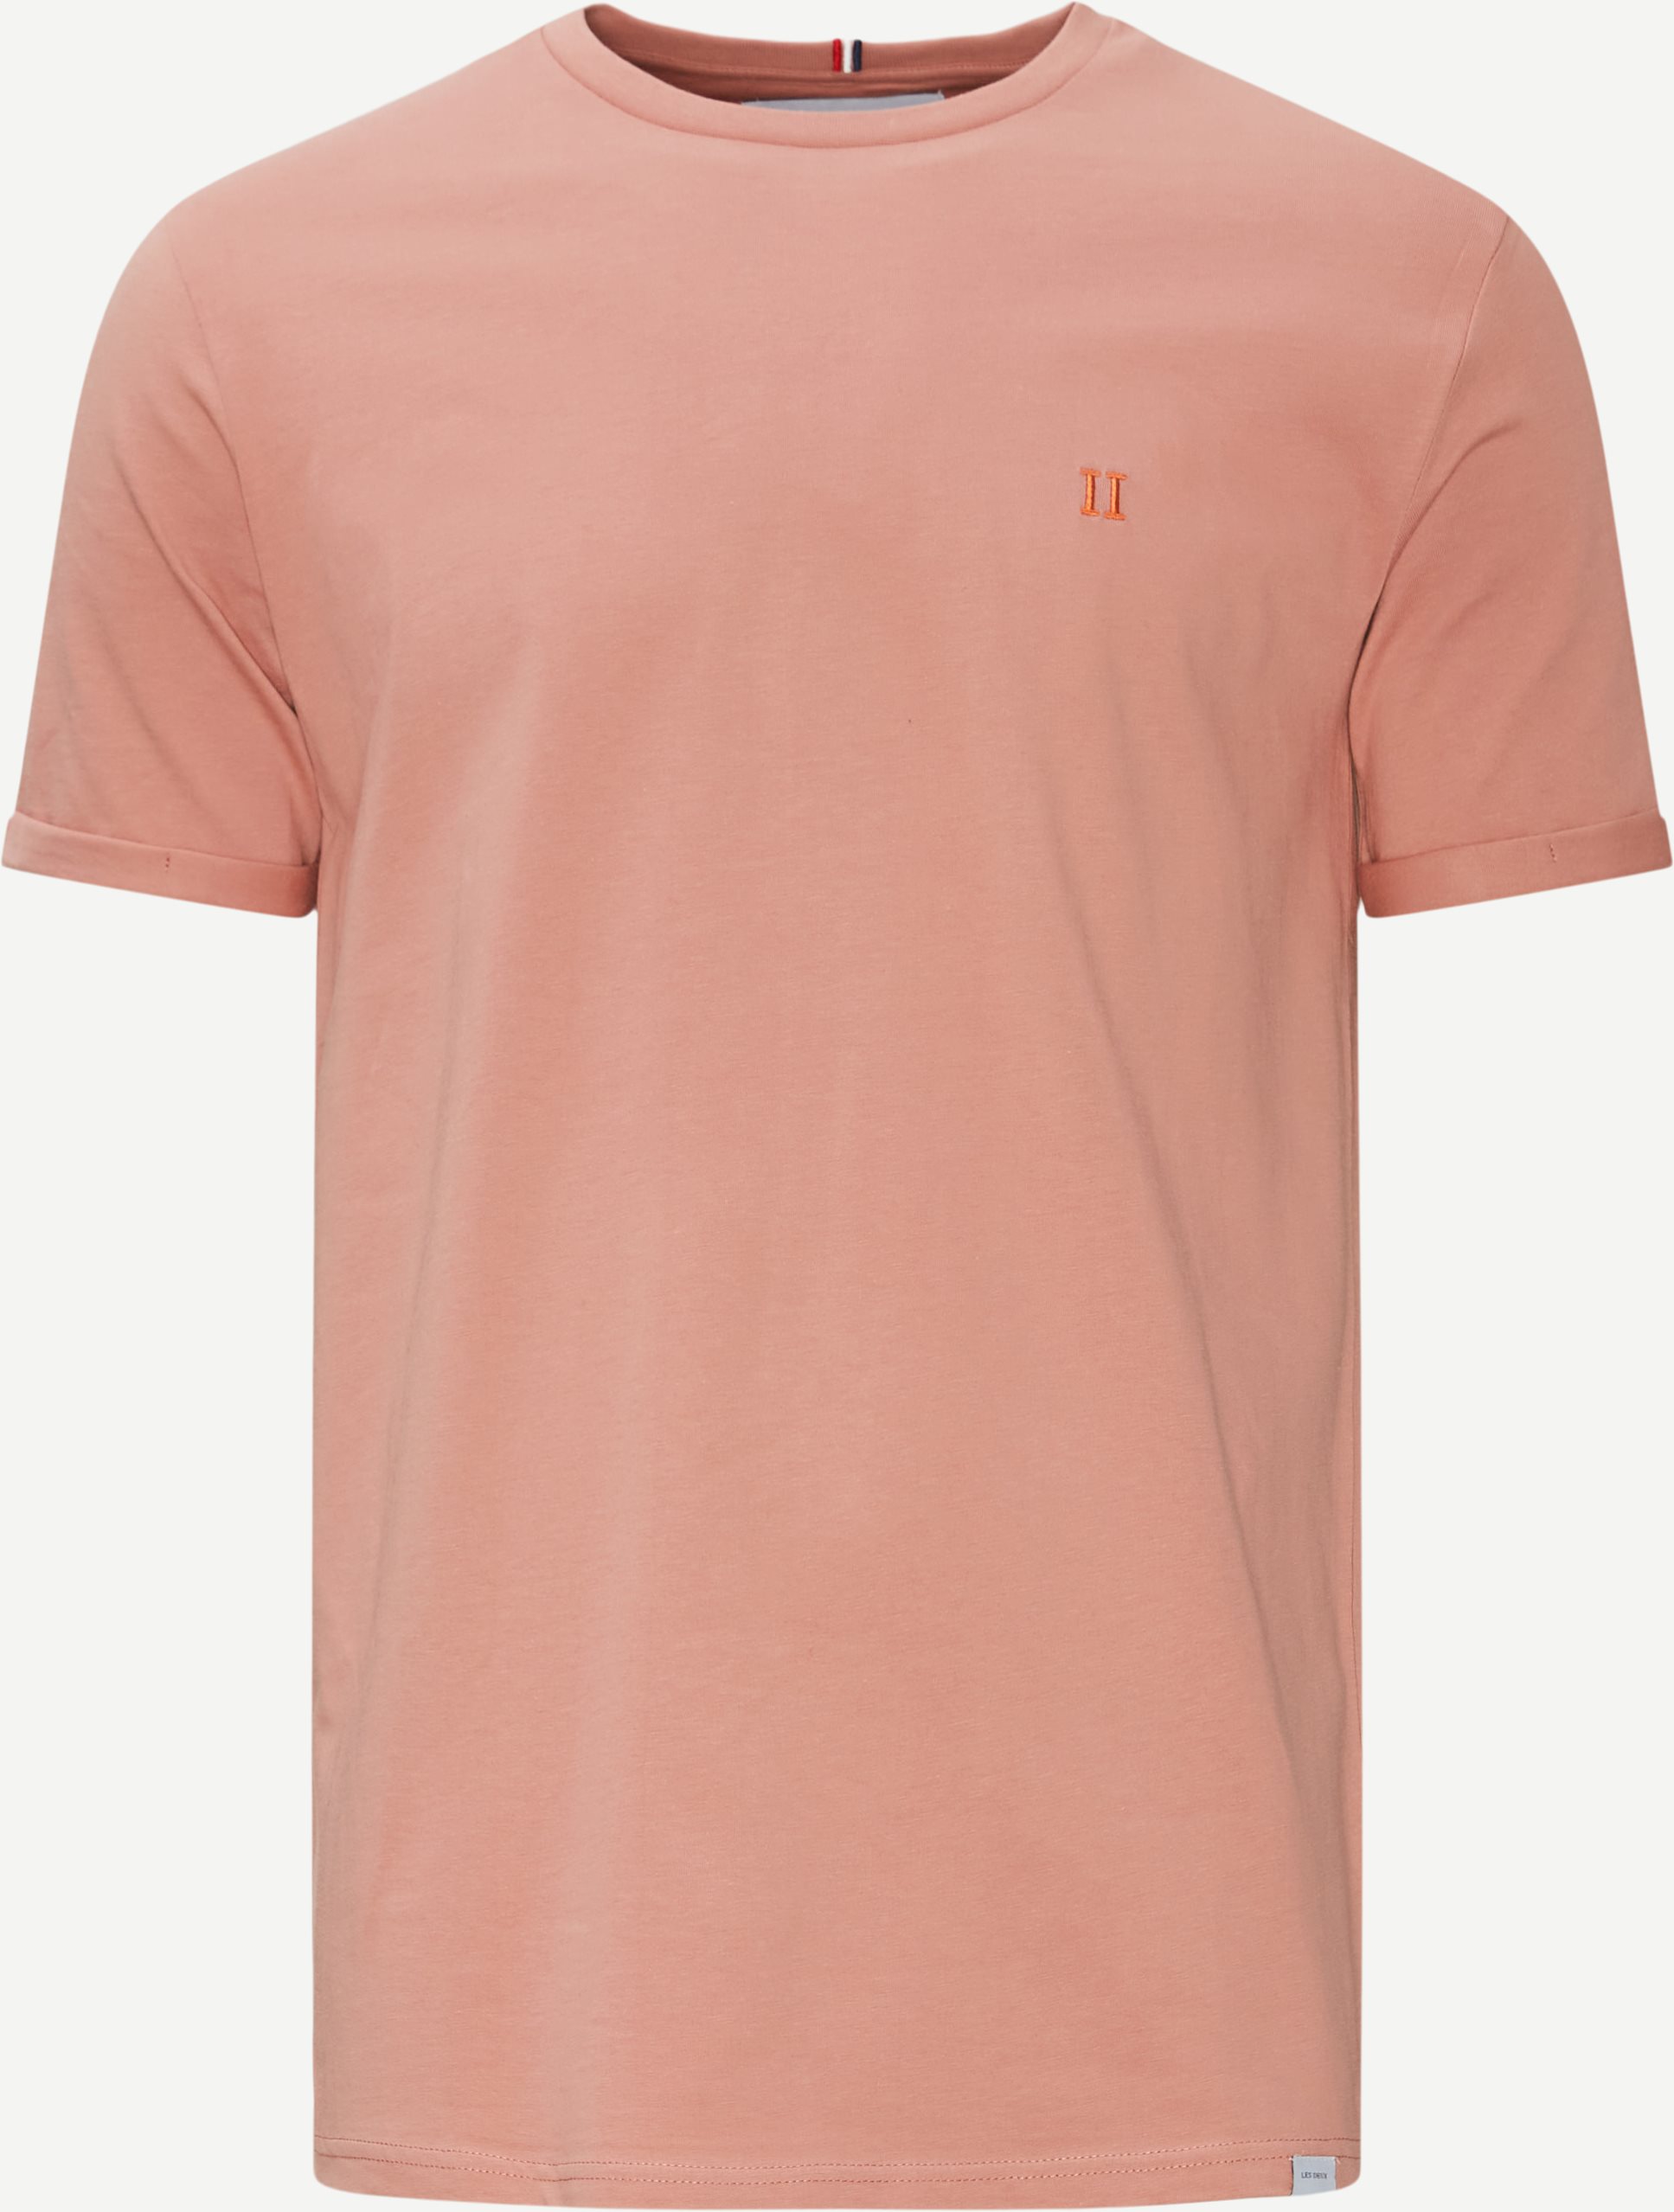 Nørregaard T-shirt - T-shirts - Regular fit - Lyserød